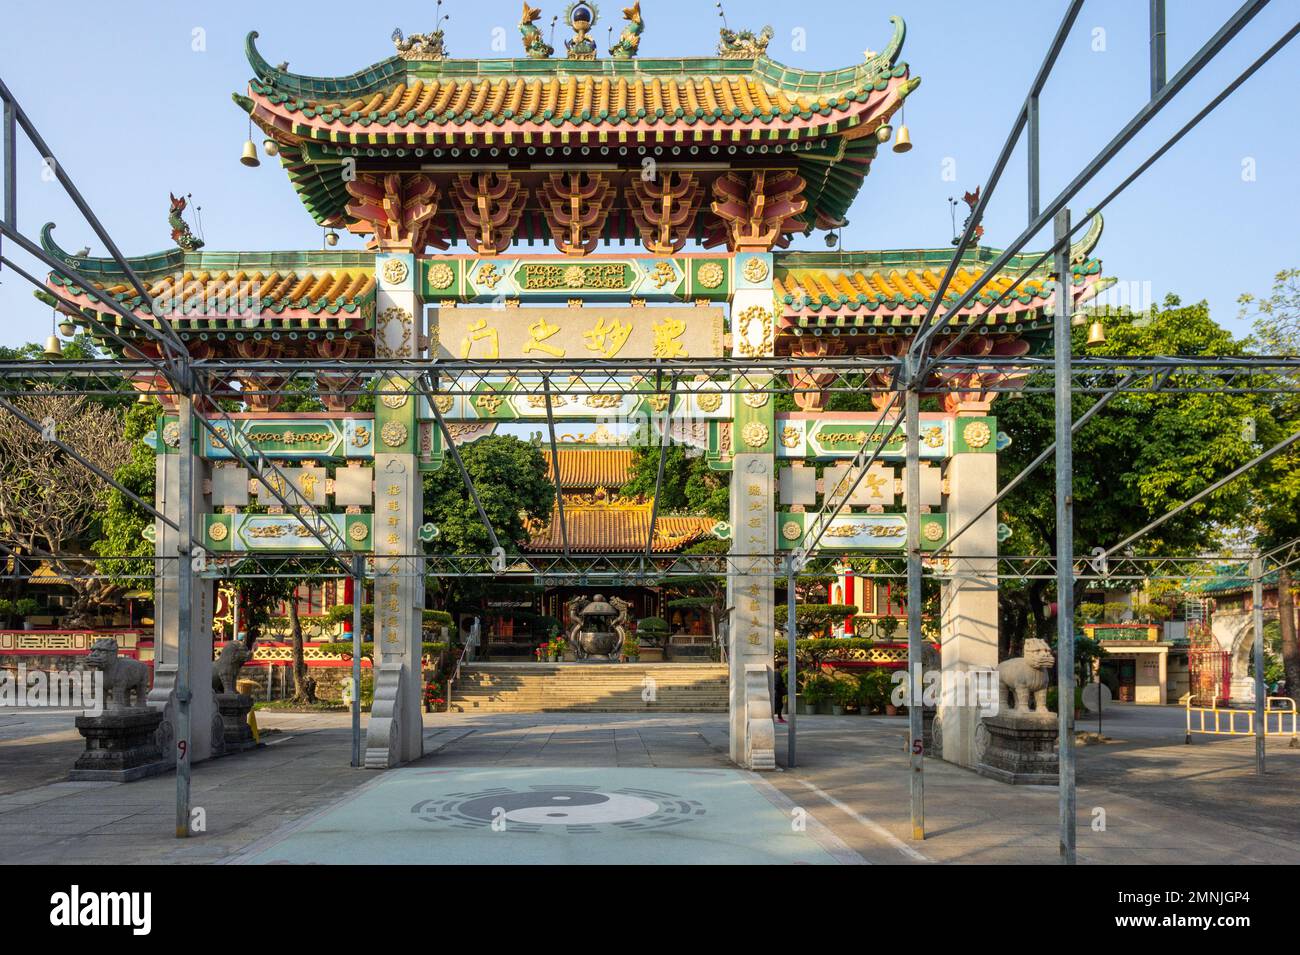 Ingresso alla Chung Yang Hall al tempio di Ching Chung Koon, New Territories, Hong Kong, 2016 Foto Stock